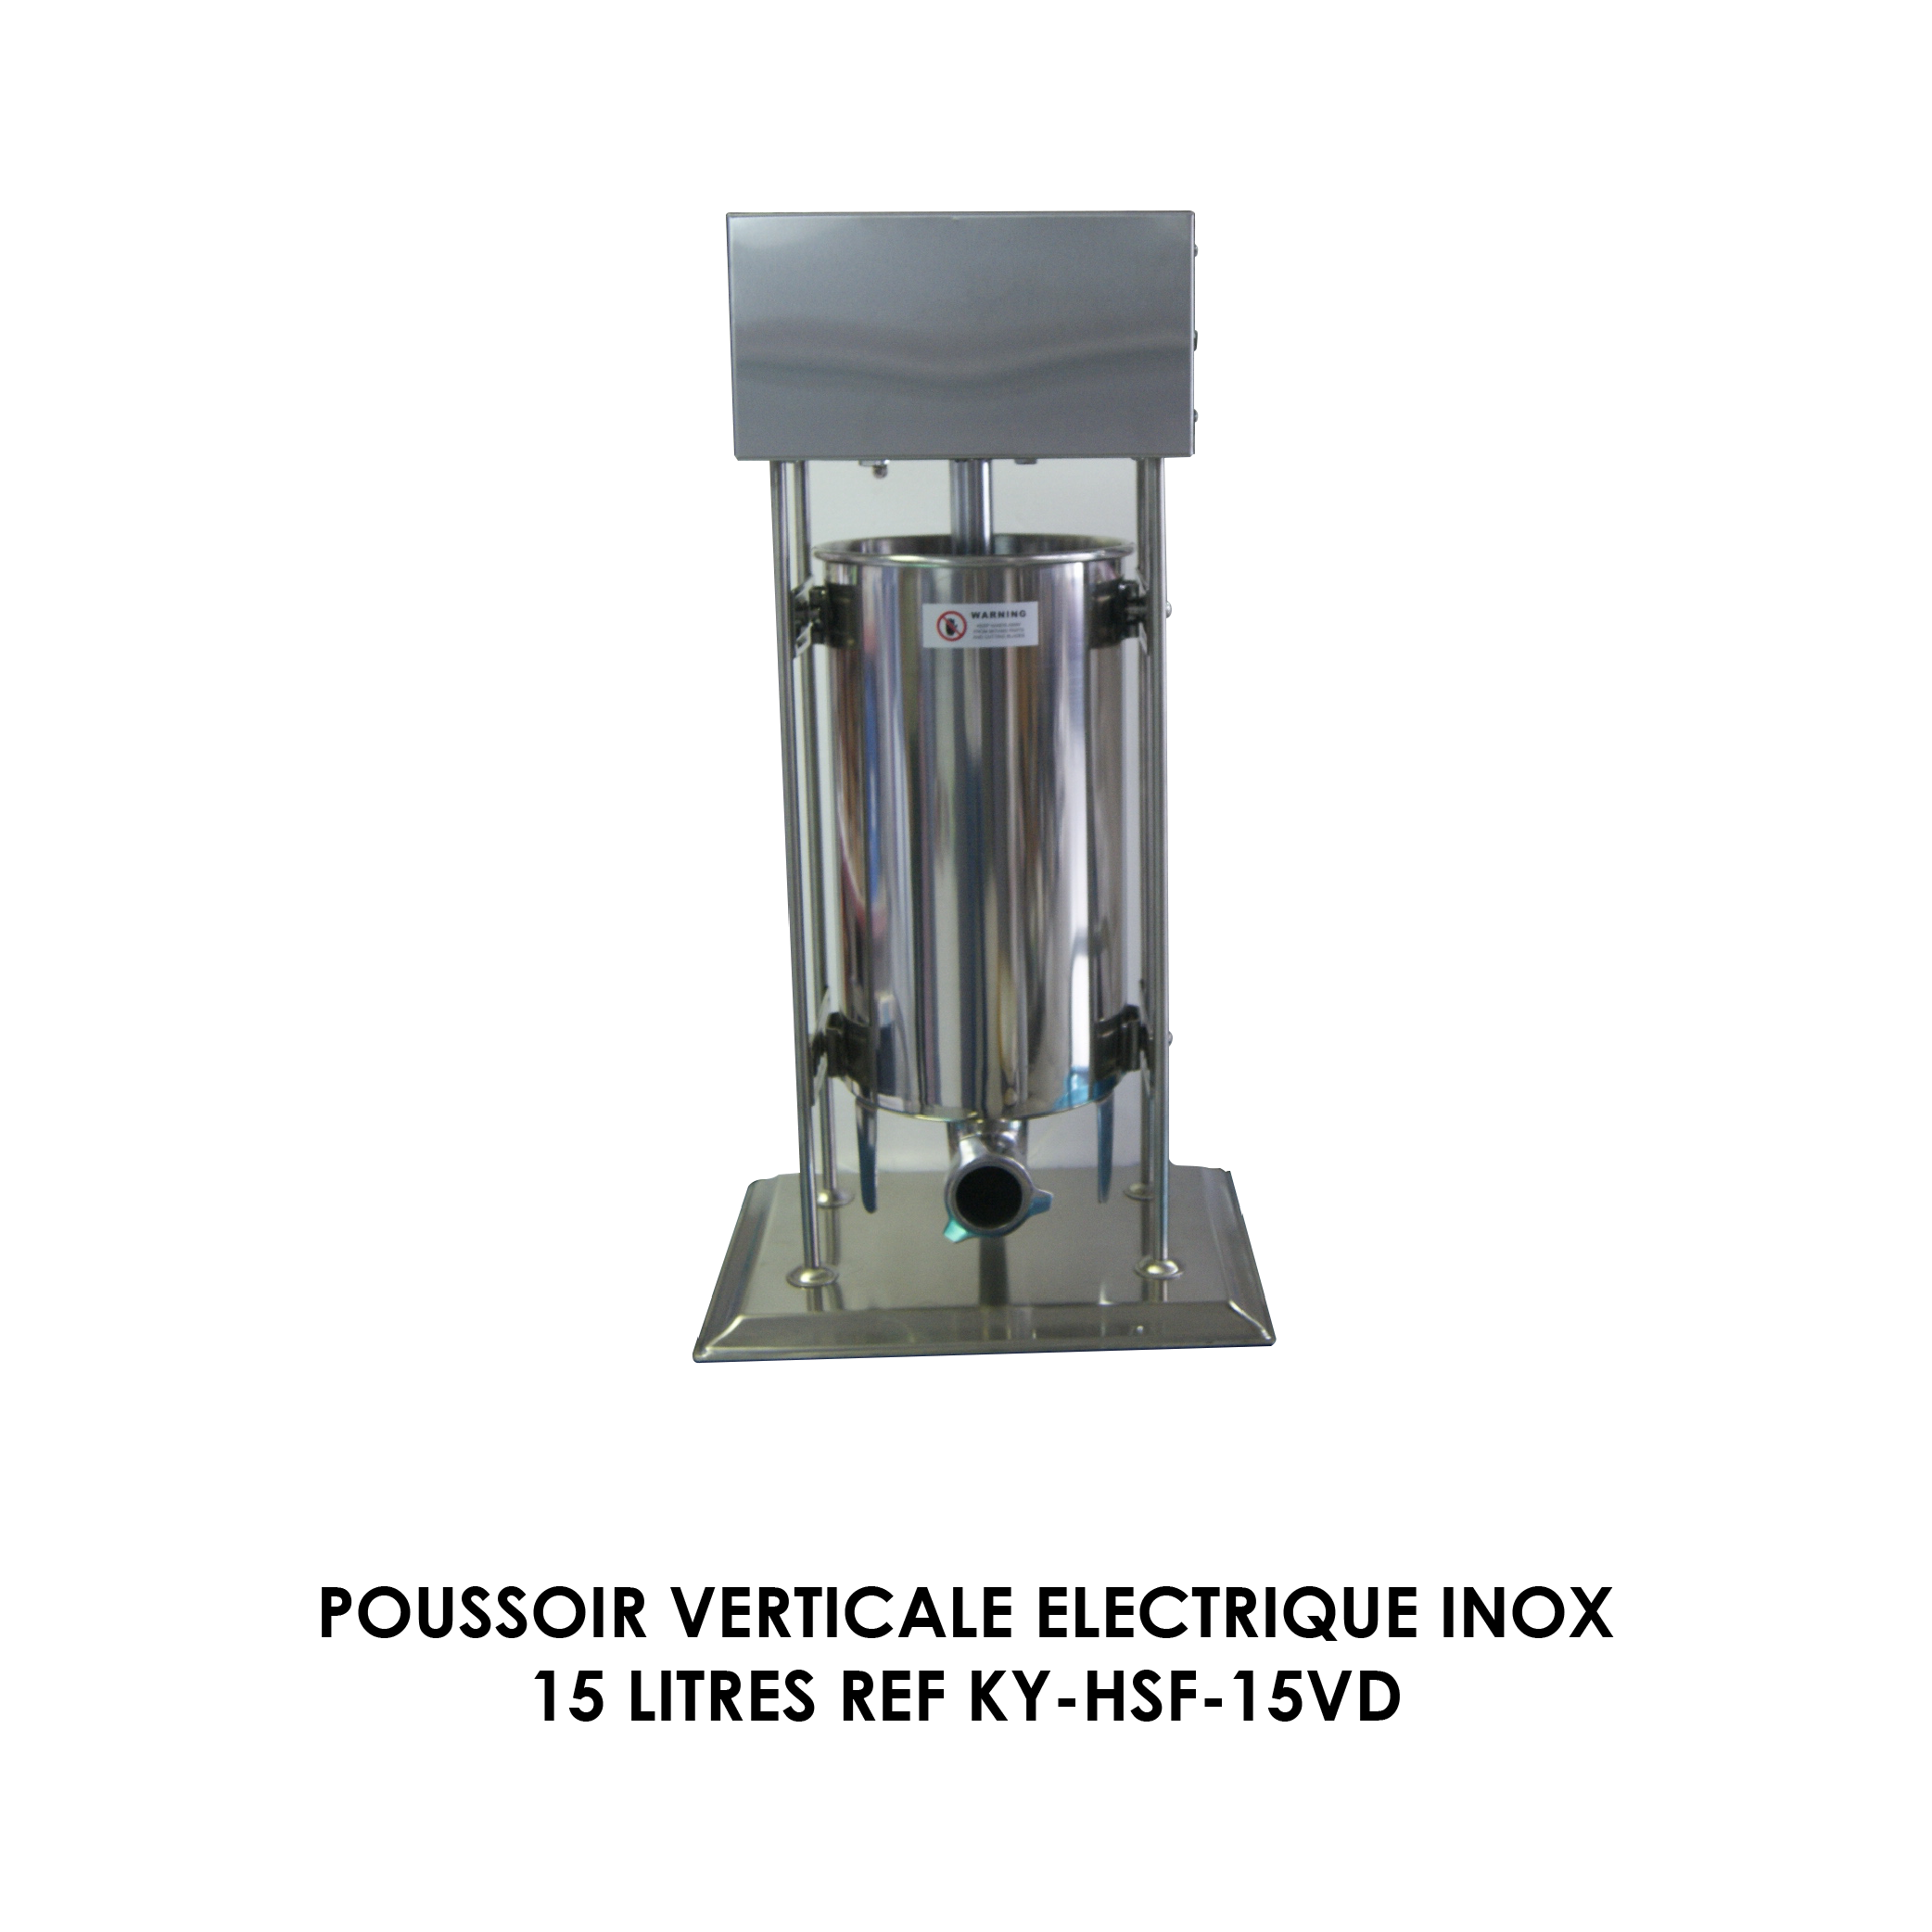 POUSSOIR VERTICALE ELECTRIQUE INOX 15 LITRES REF KY-HSF-15VD